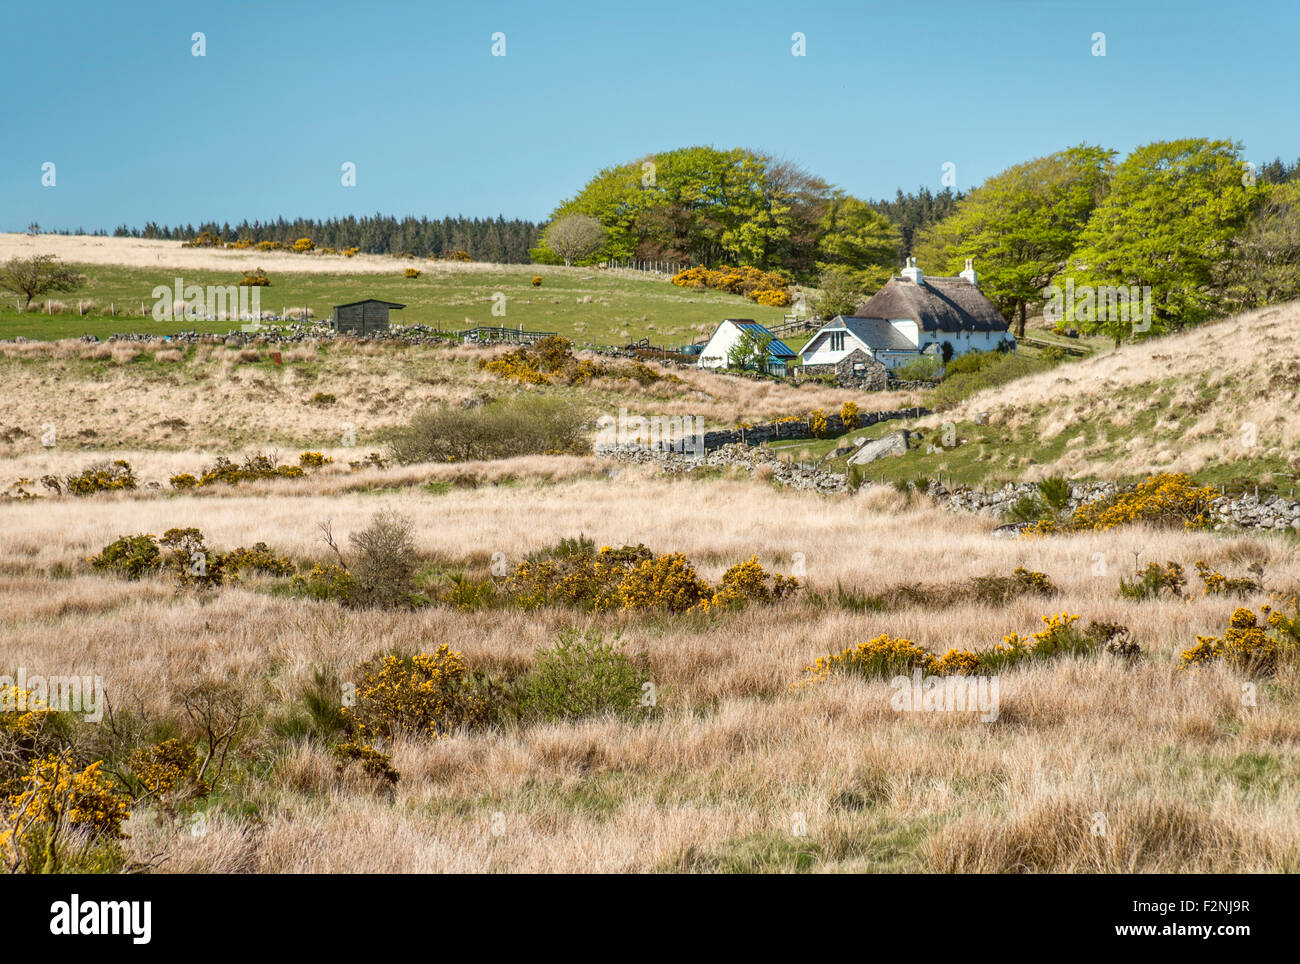 Cottage fermier dans un paysage au parc national de Dartmoor, Devon, Angleterre, Royaume-Uni Banque D'Images